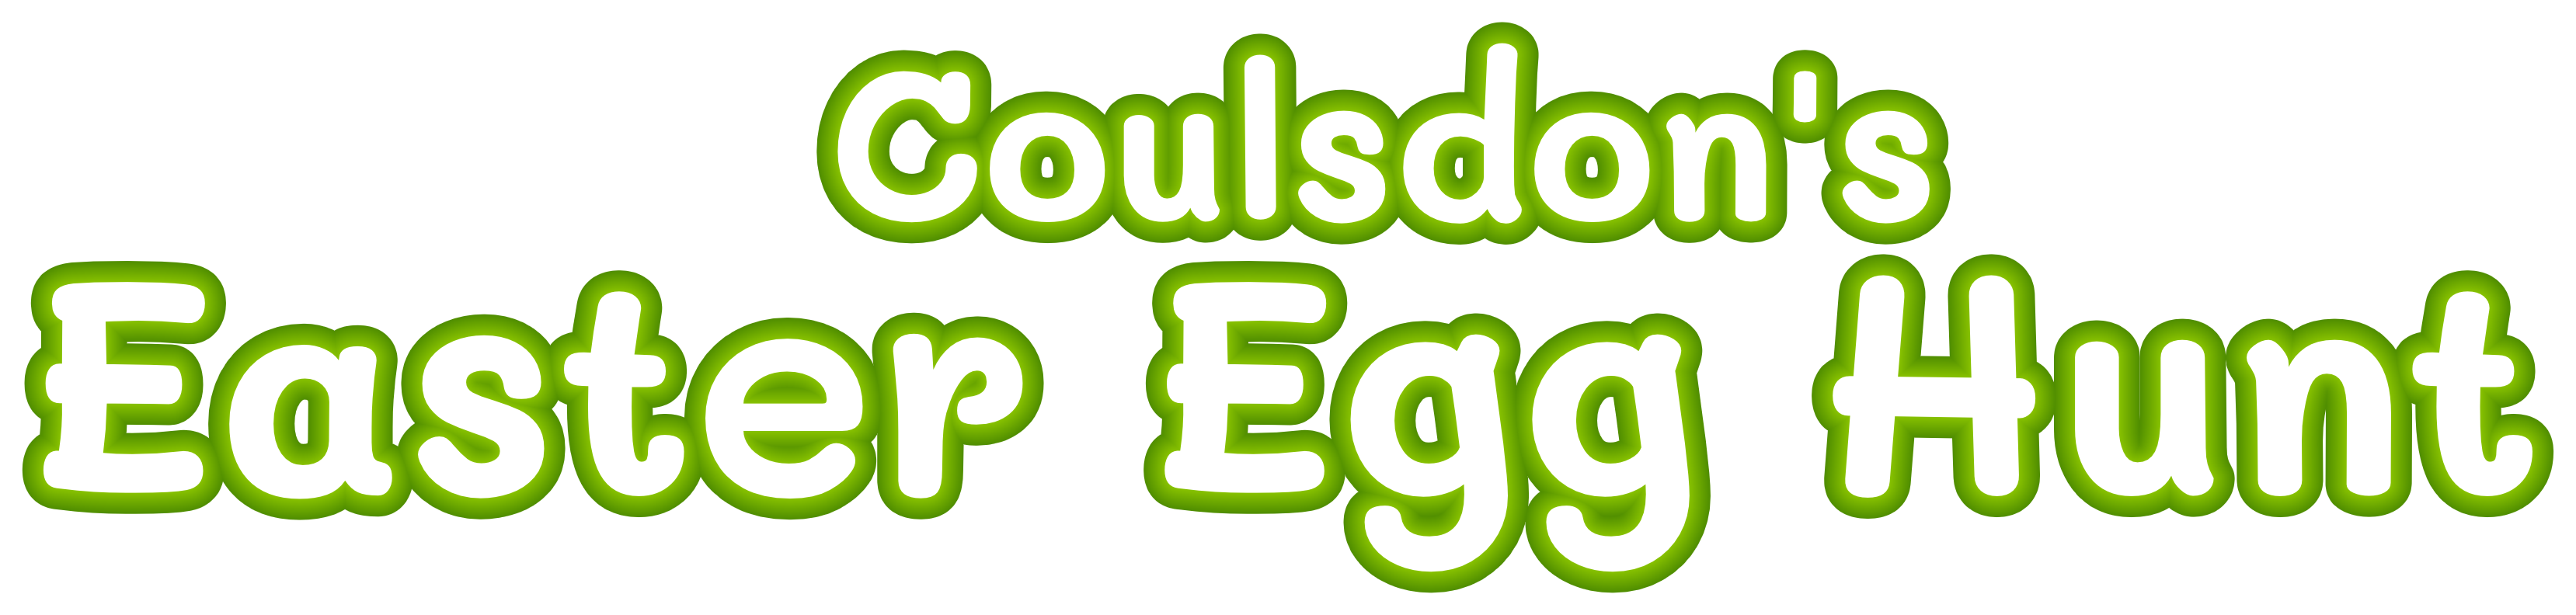 Coulsdon's Easter Egg Hunt